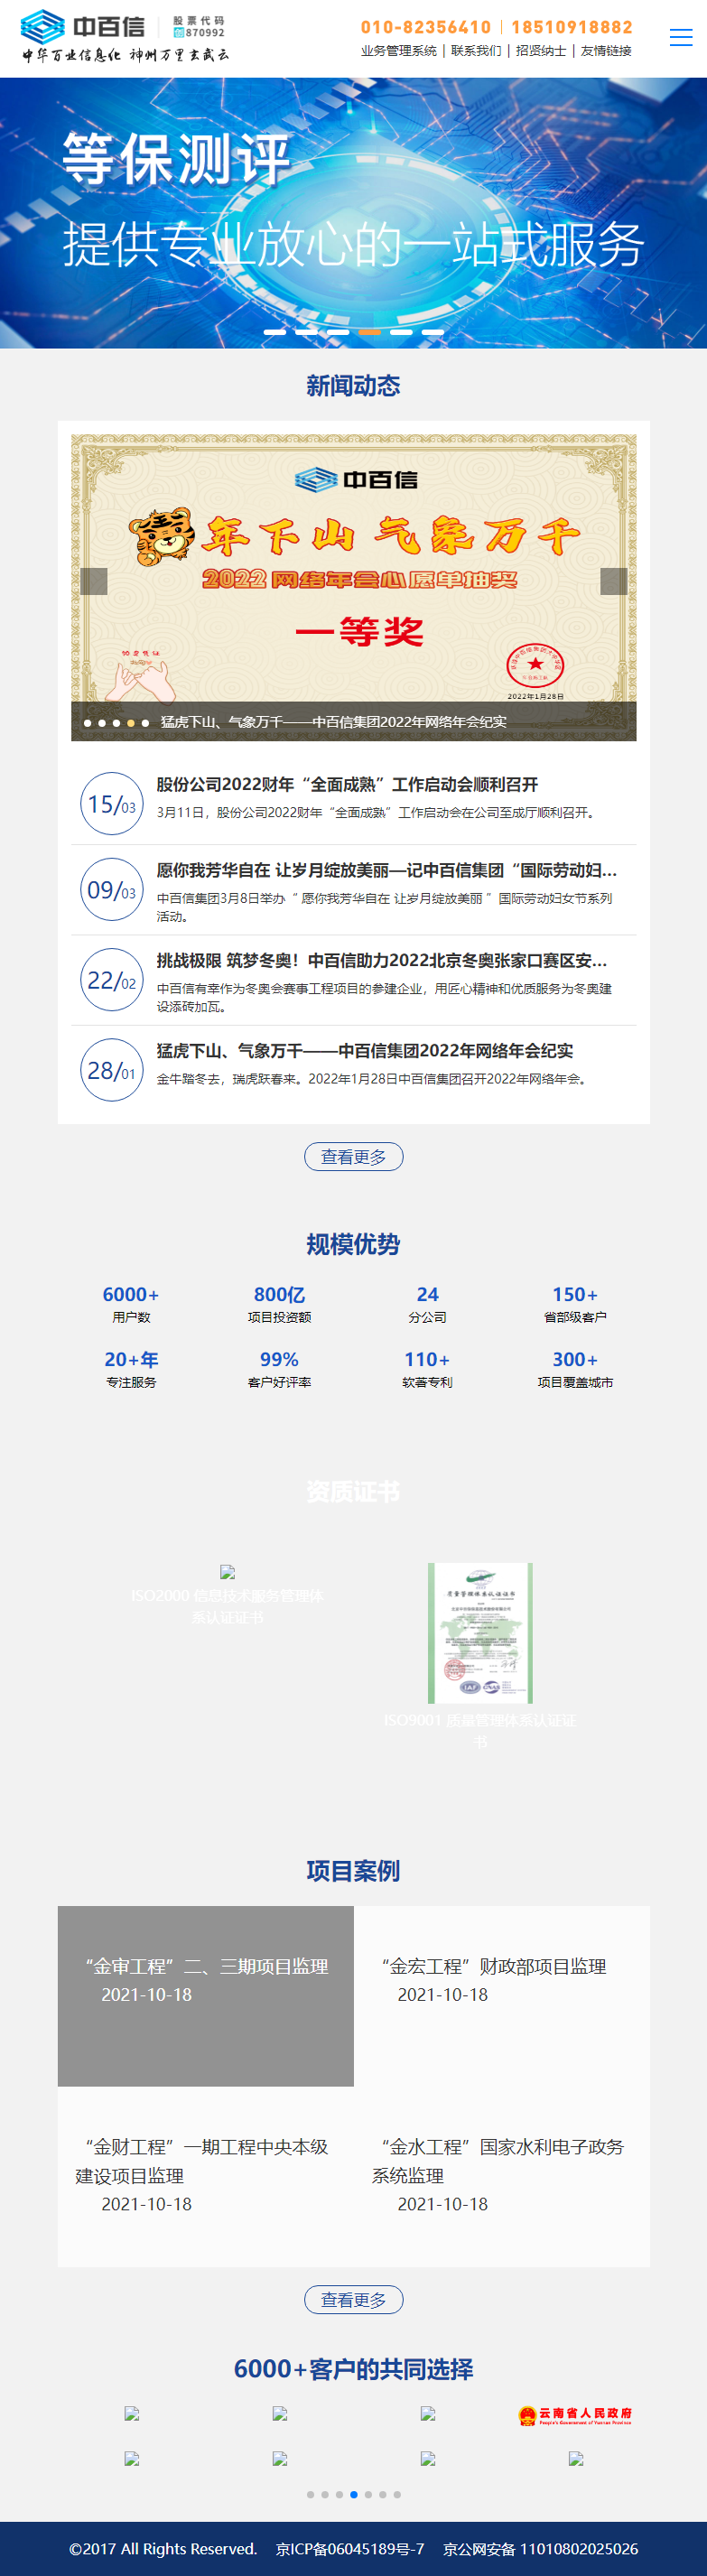 北京中百信信息技术股份有限公司网站案例